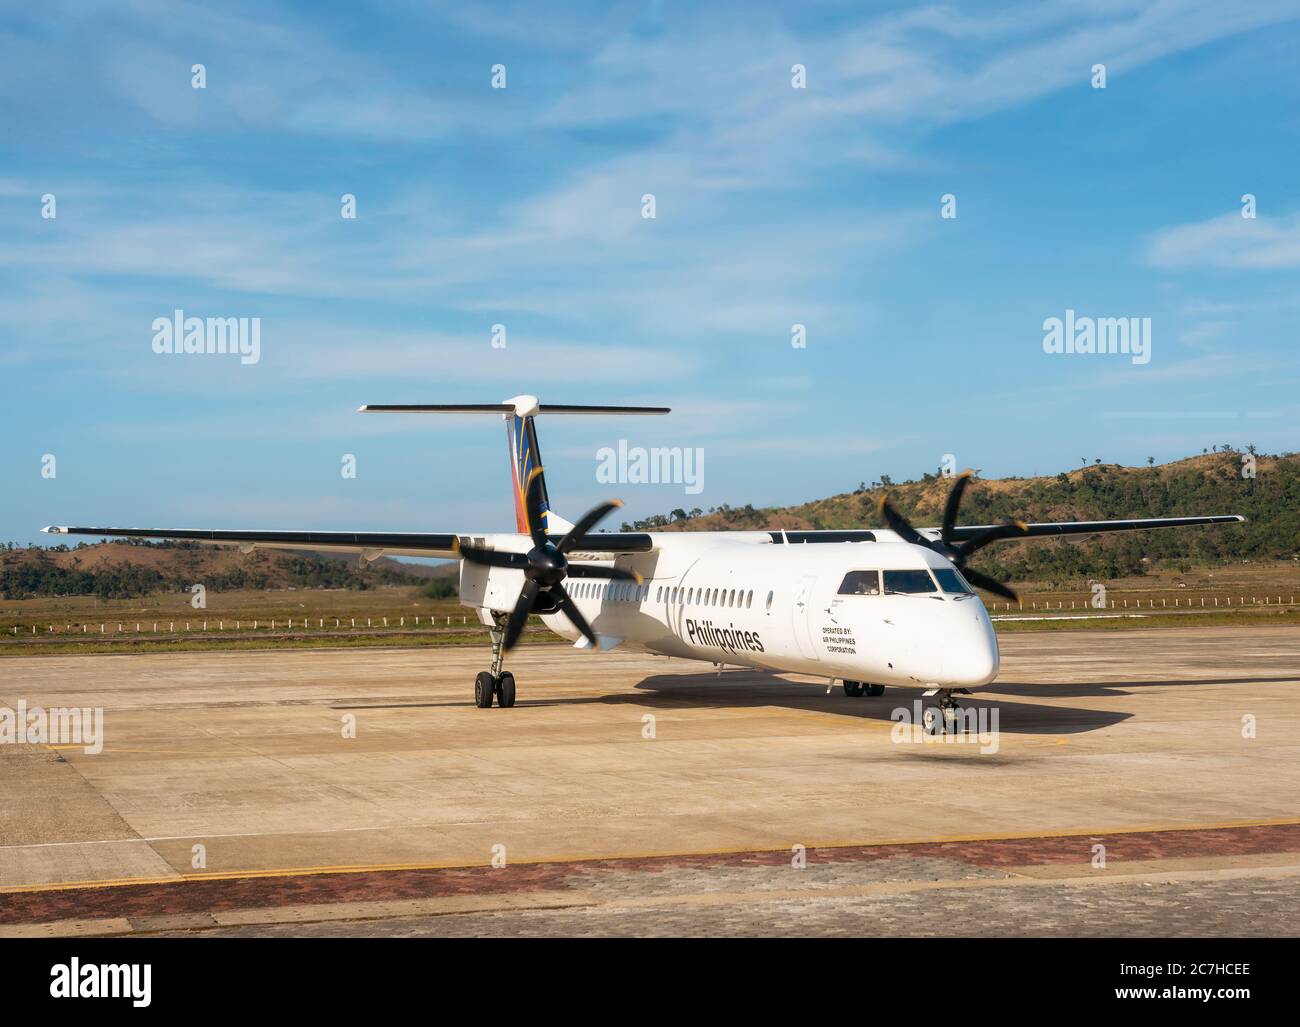 San Vicente, Filippine - 30 gennaio 2019: Aereo Bombardier Q400 Philippine Airlines presso il piccolo aeroporto dell'isola di Busuanga. Foto Stock